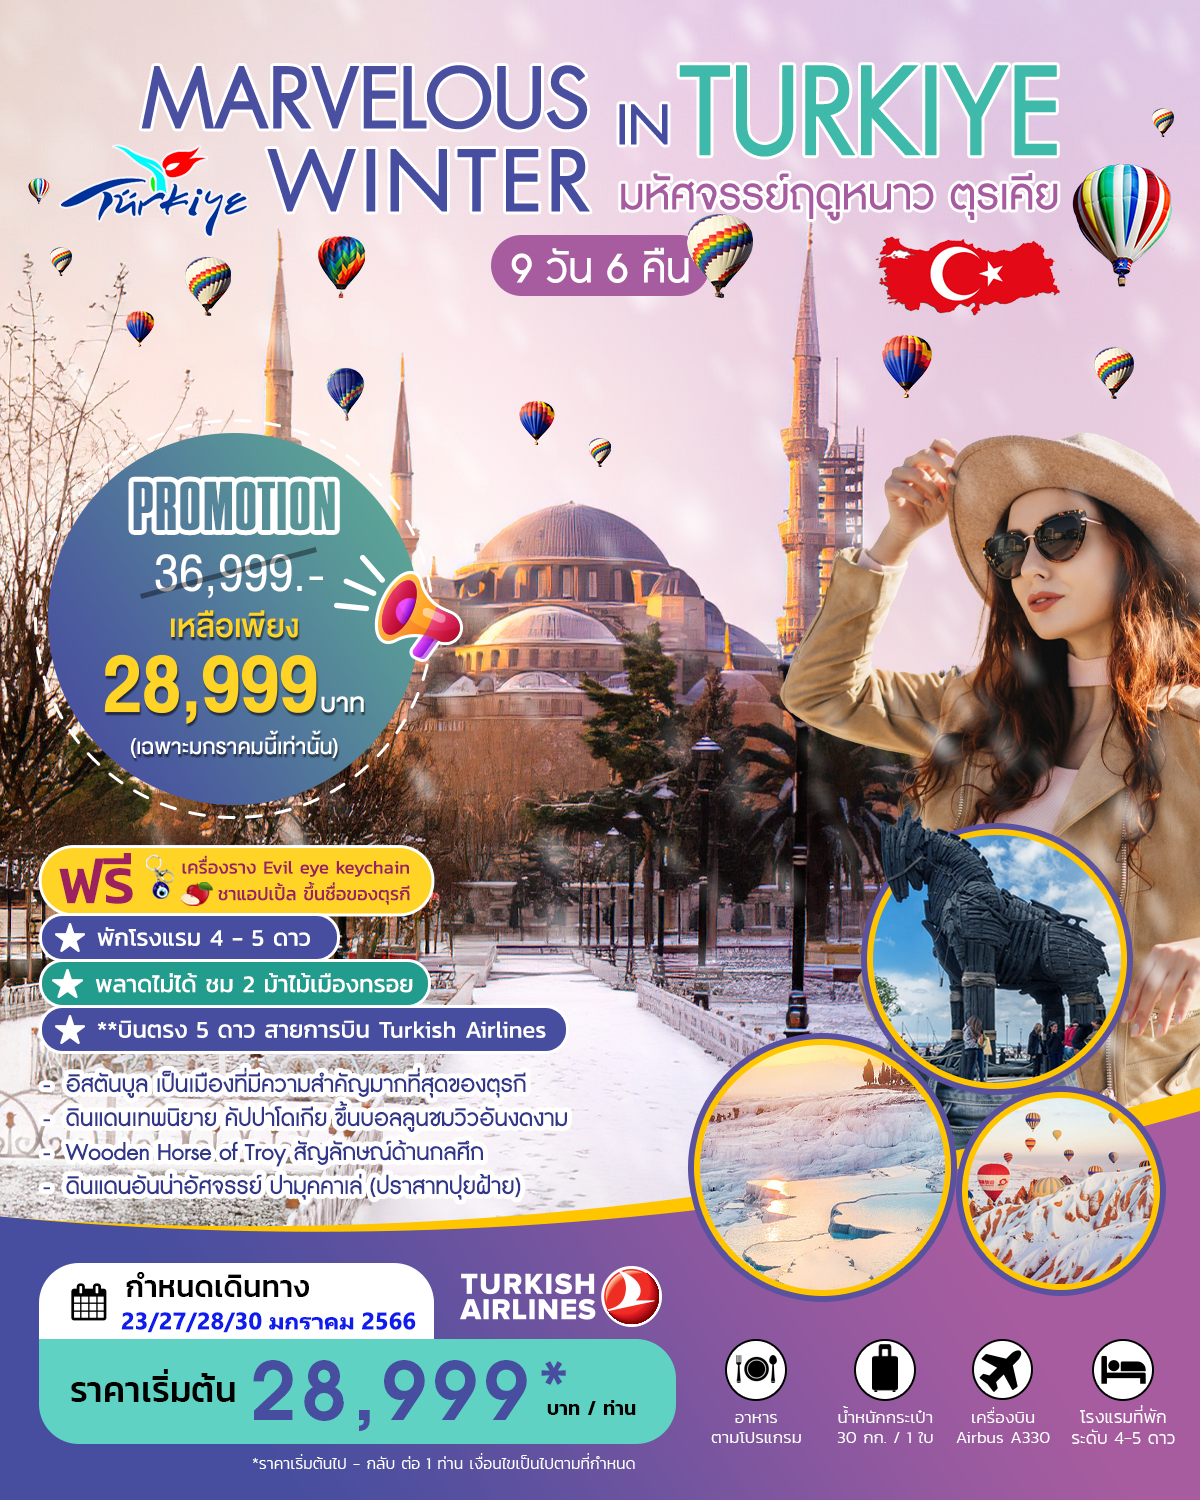 MARVELOUS WINTER IN TURKIYE มหัศจรรย์ฤดูหนาว ตุรเคีย  PRO